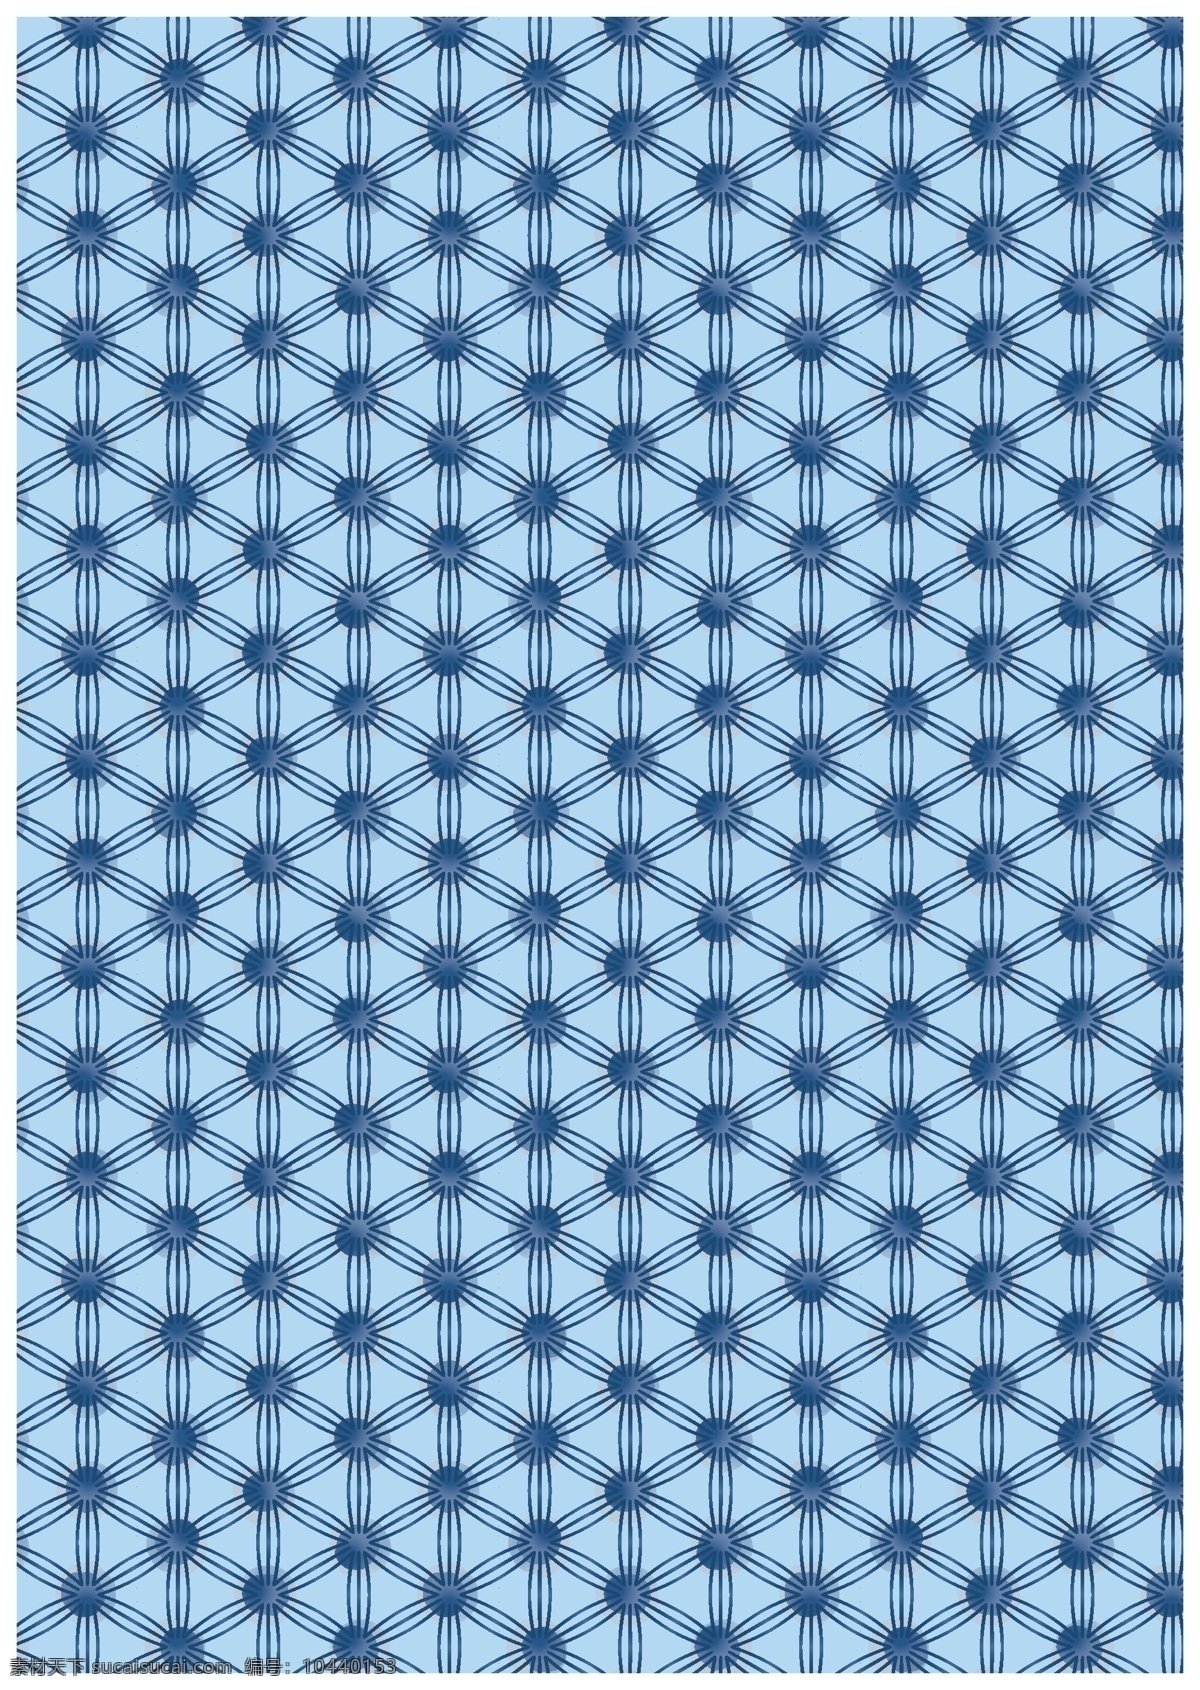 复杂 图形 图案 背景 元素 复杂图形 图案设计 蓝色 圆点 六边形